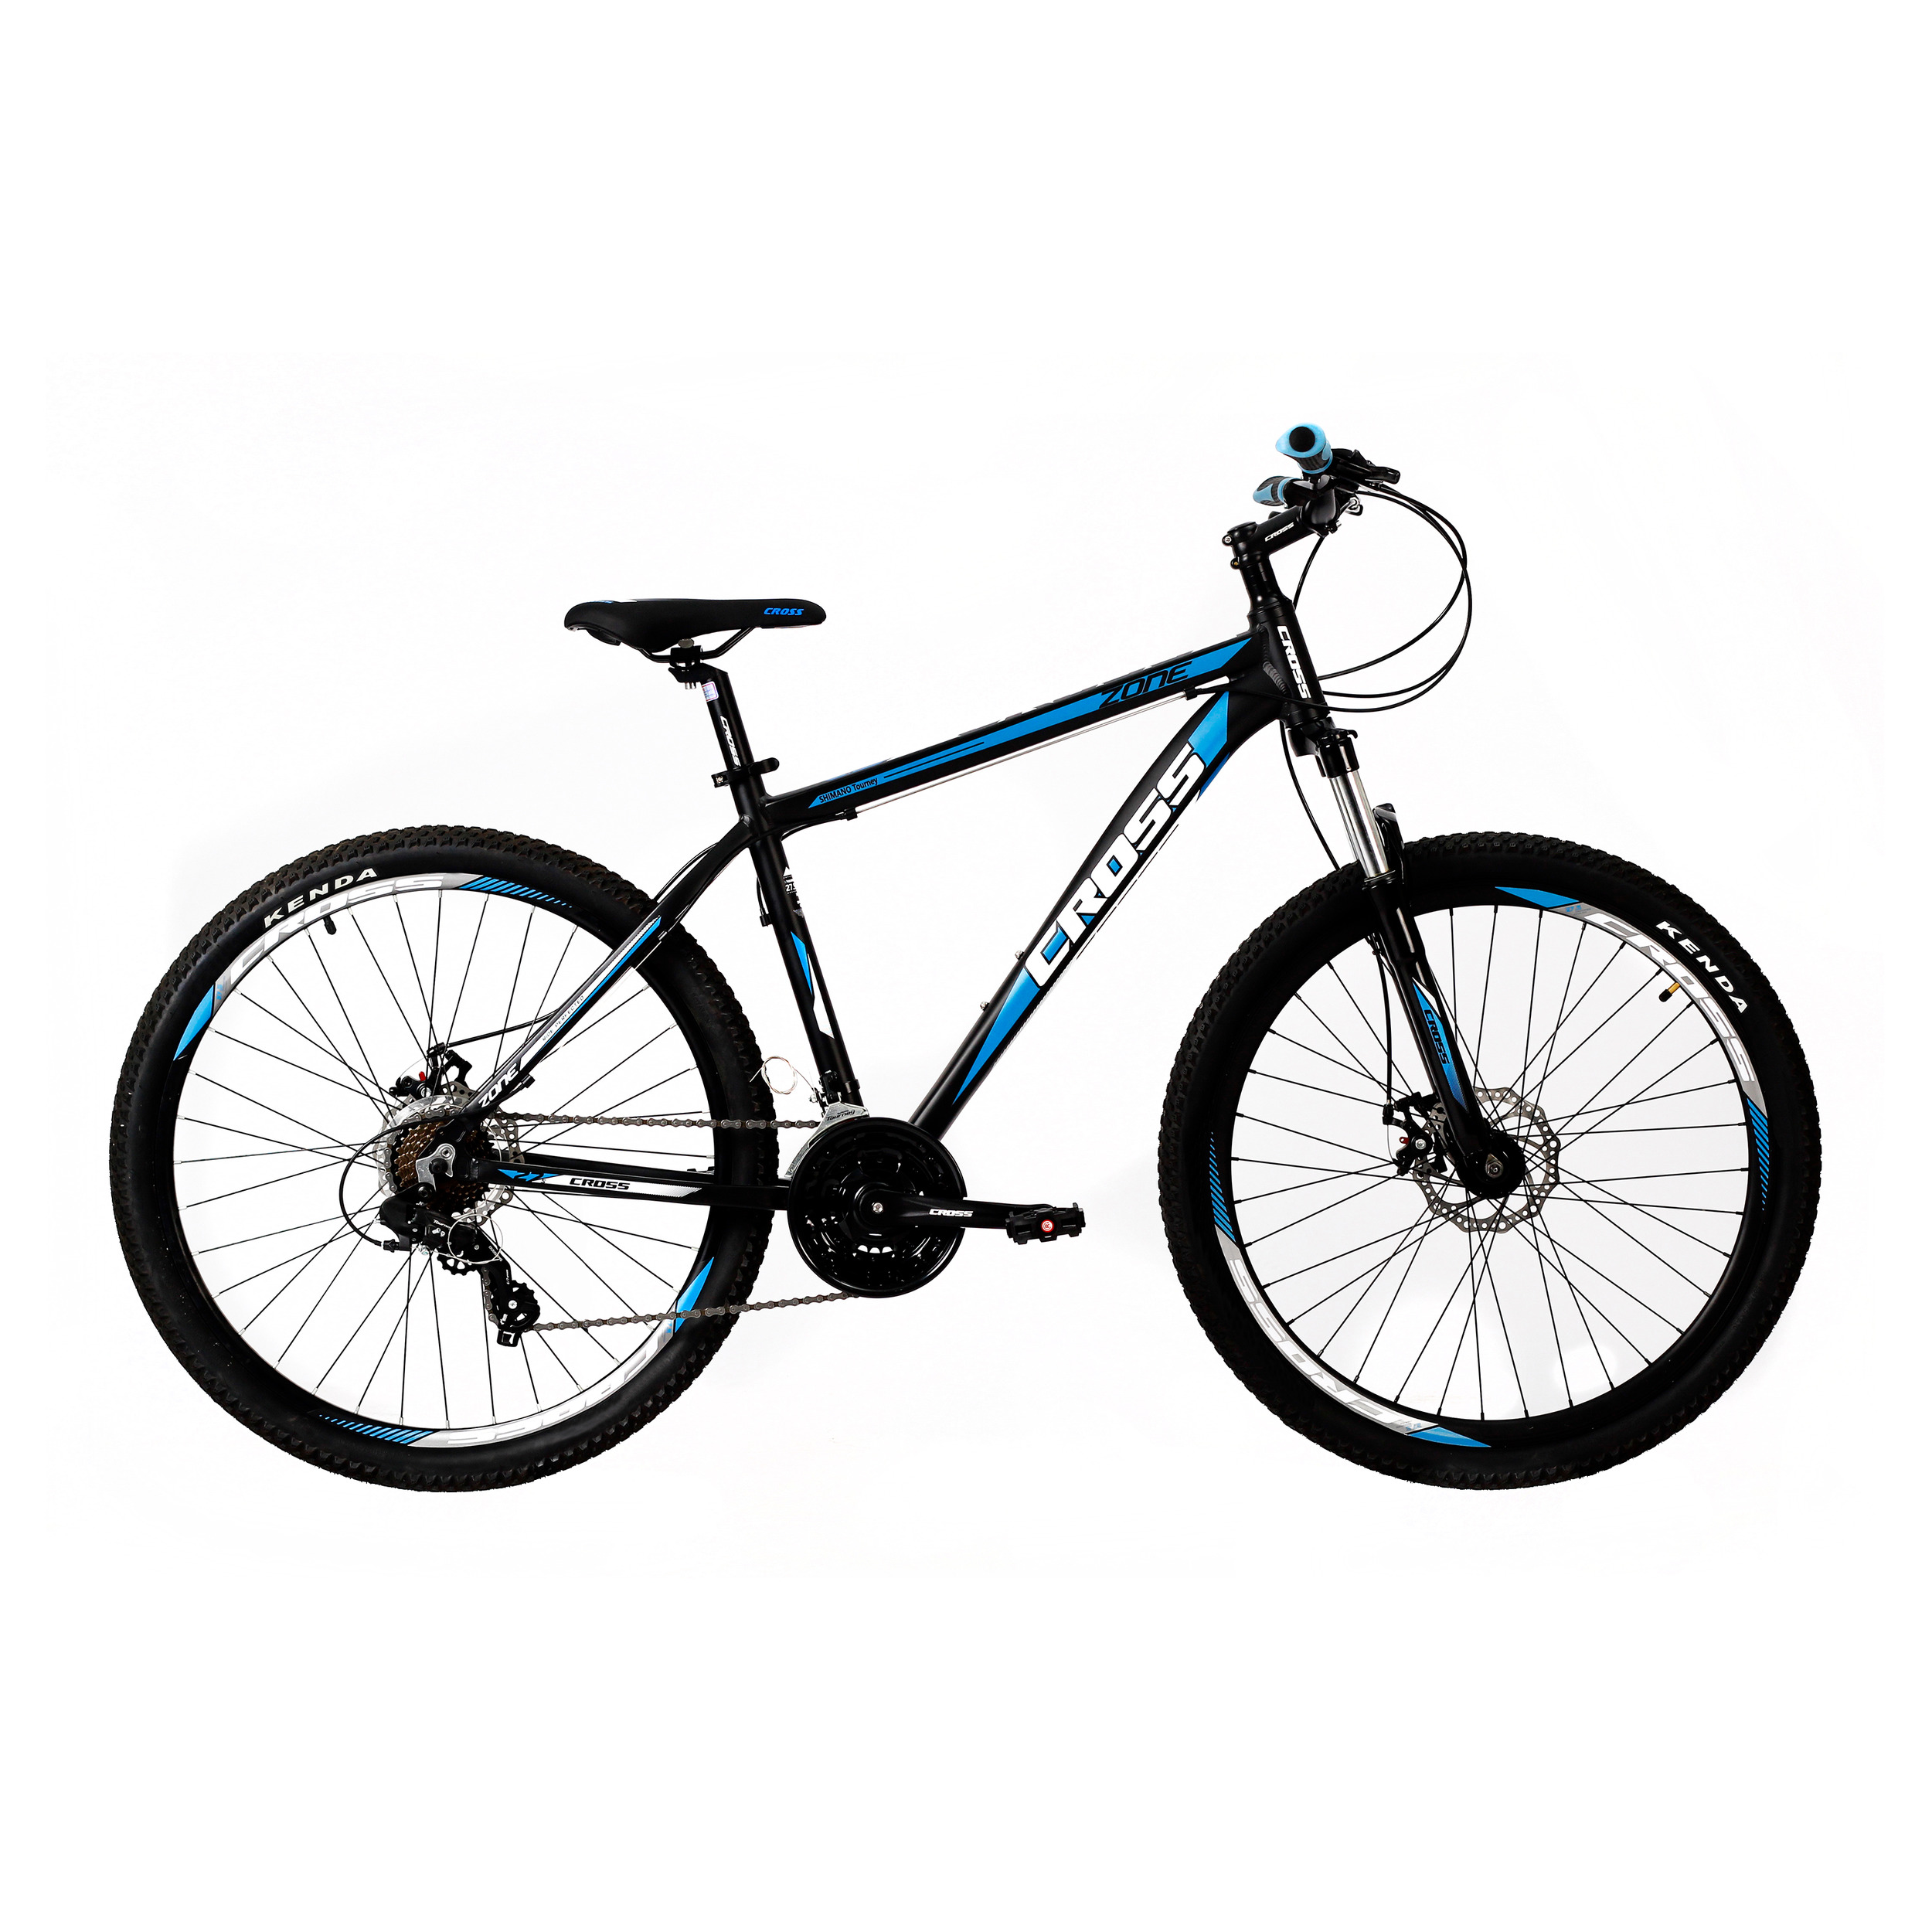 نکته خرید - قیمت روز دوچرخه کوهستان کراس مدل ZONE سایز طوقه 26 خرید